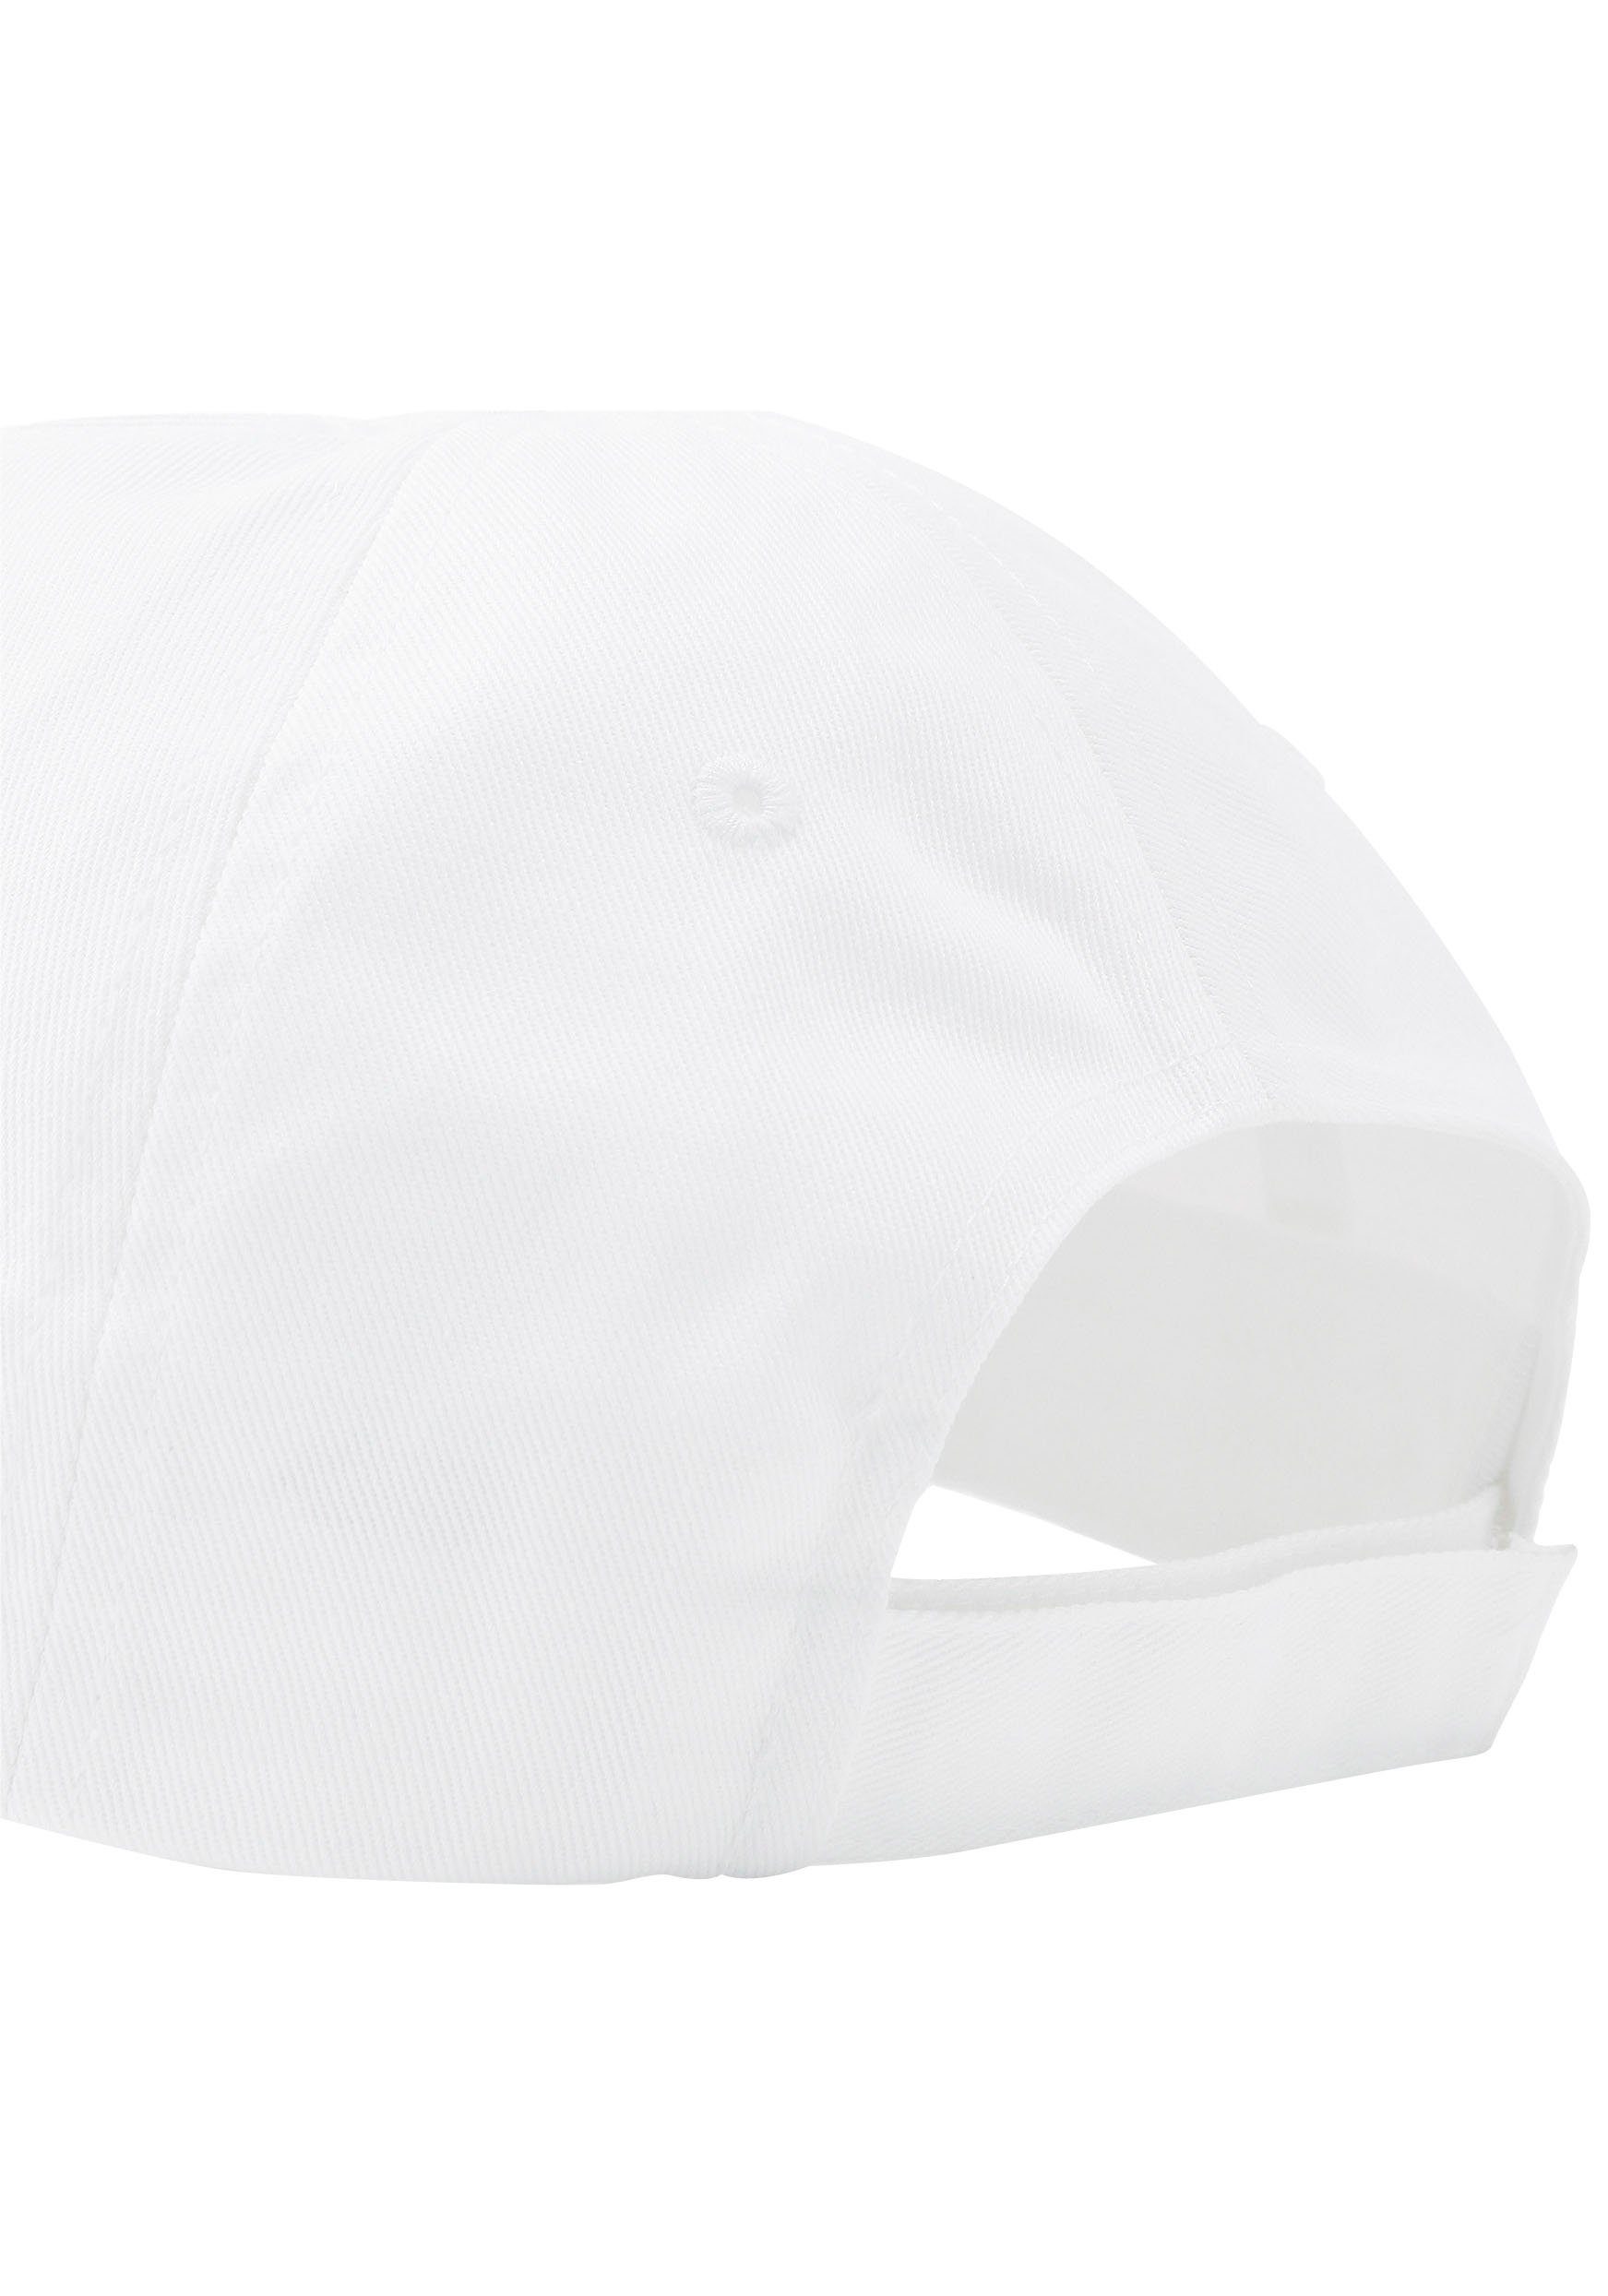 Baseball CAP ESS Cap white-No,1 PUMA